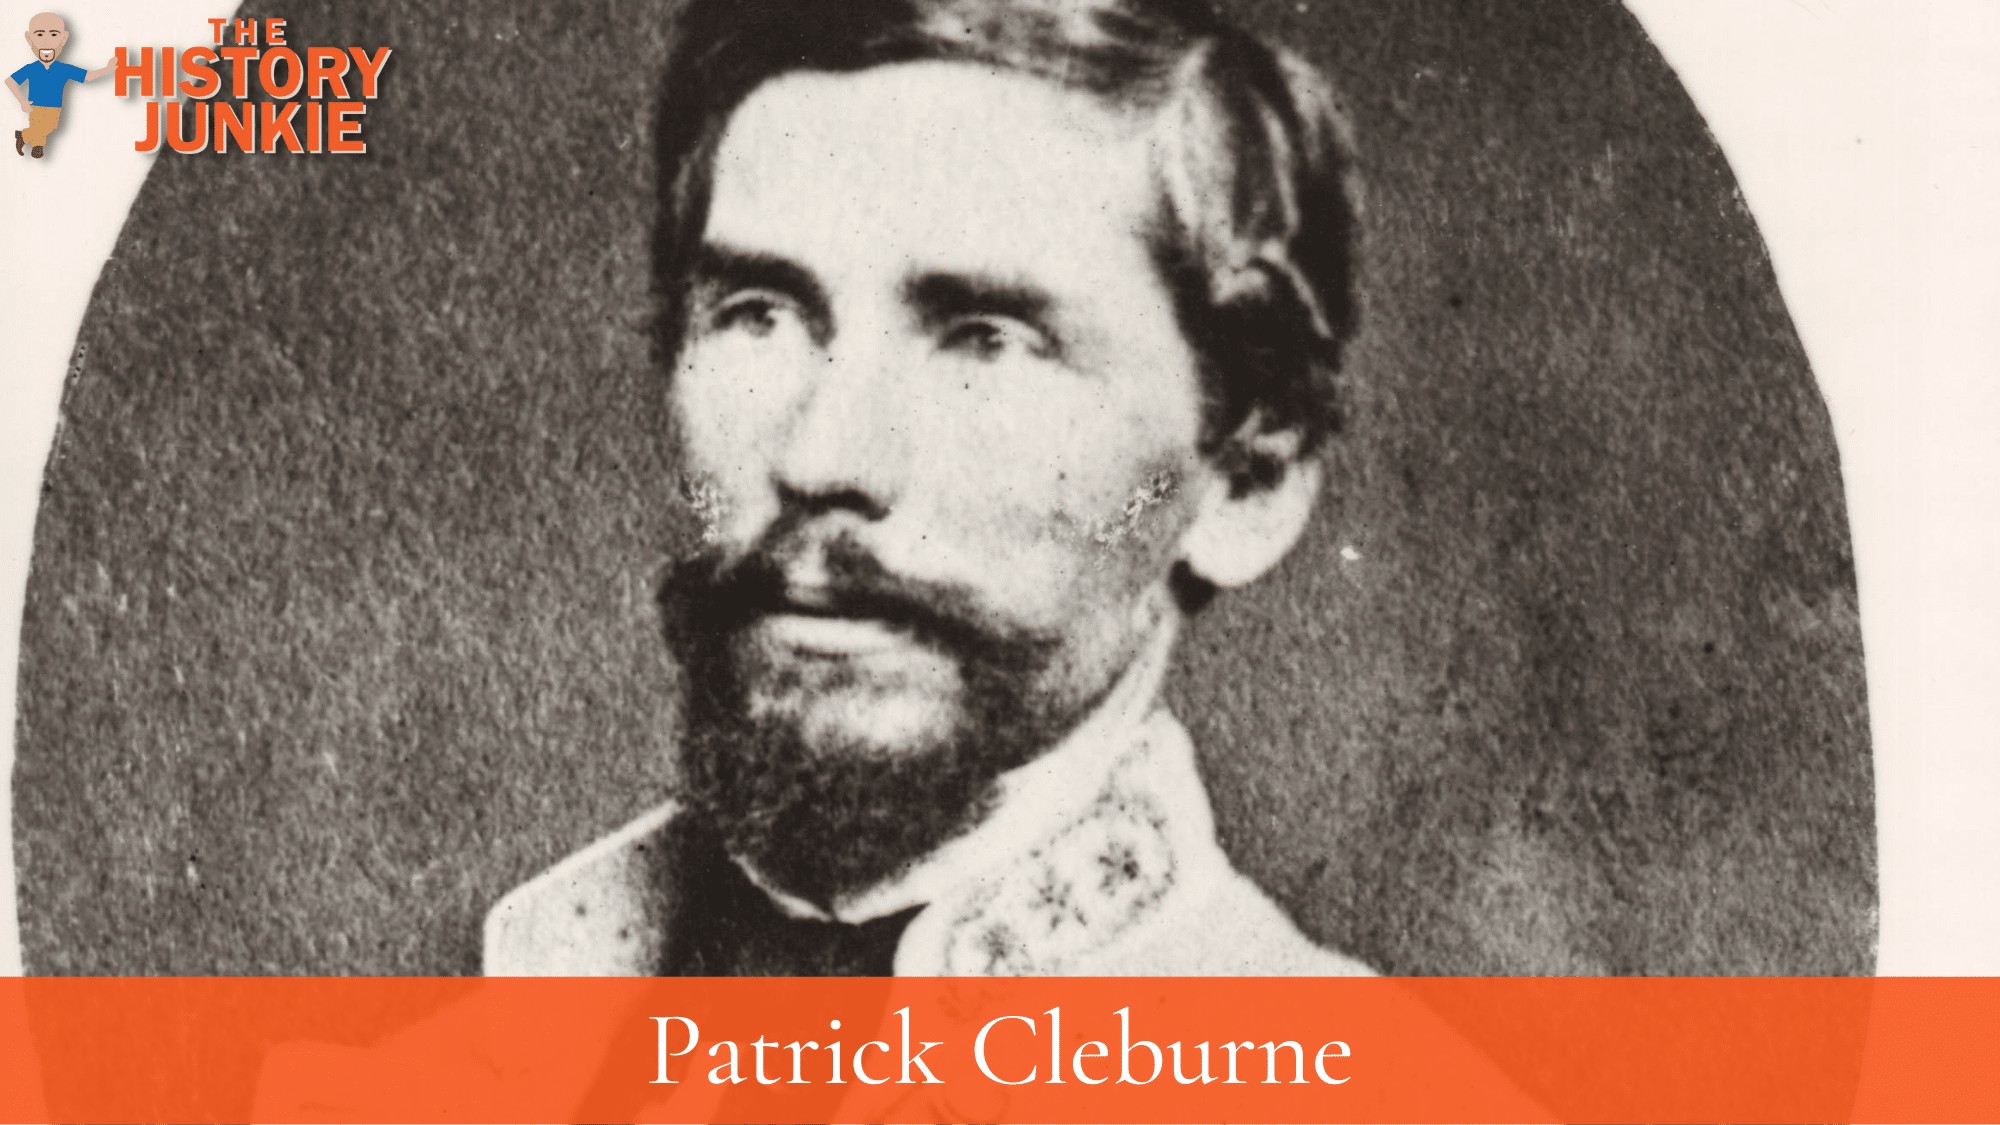 Patrick Cleburne